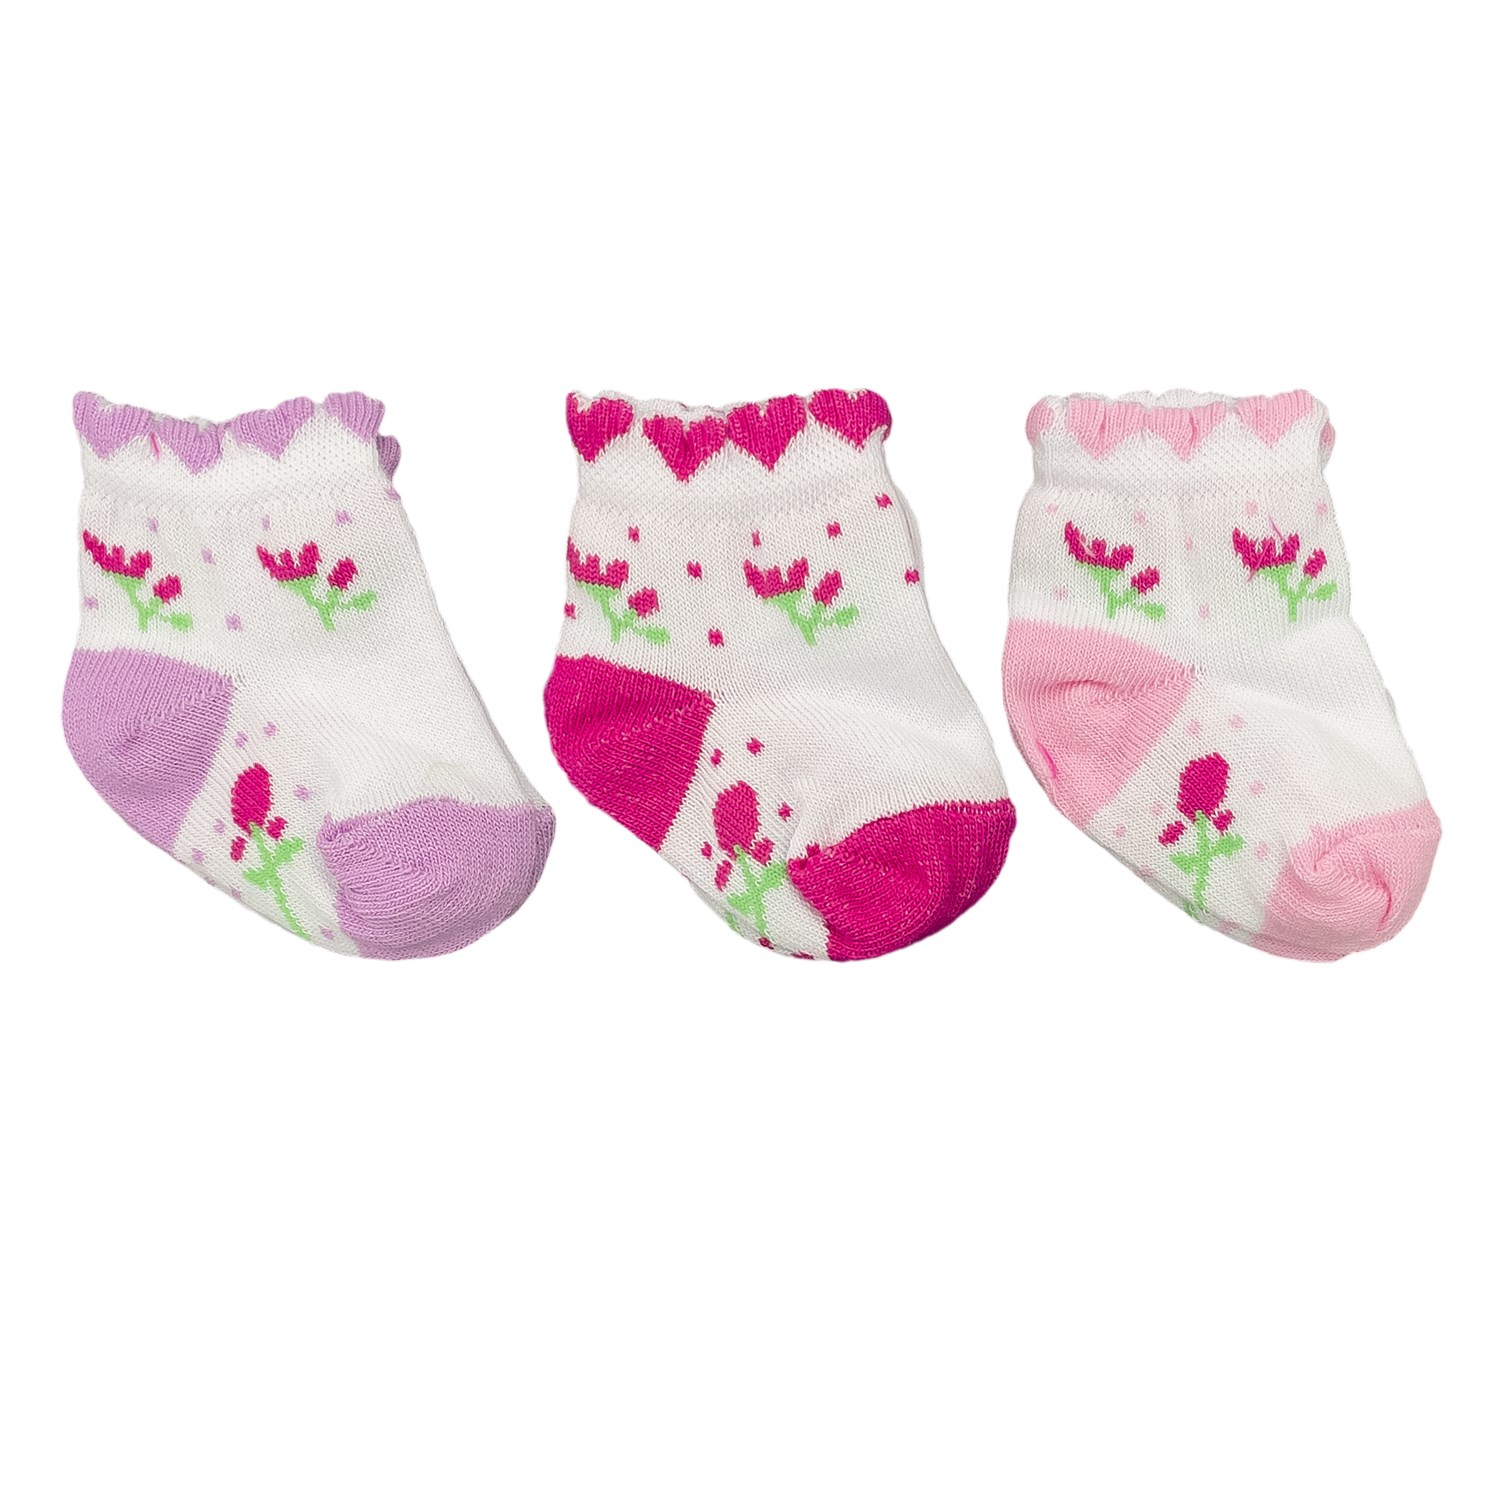 Mini Damla 3'lü Desenli Bebek Çorabı 41910 Pembe-Fuşya